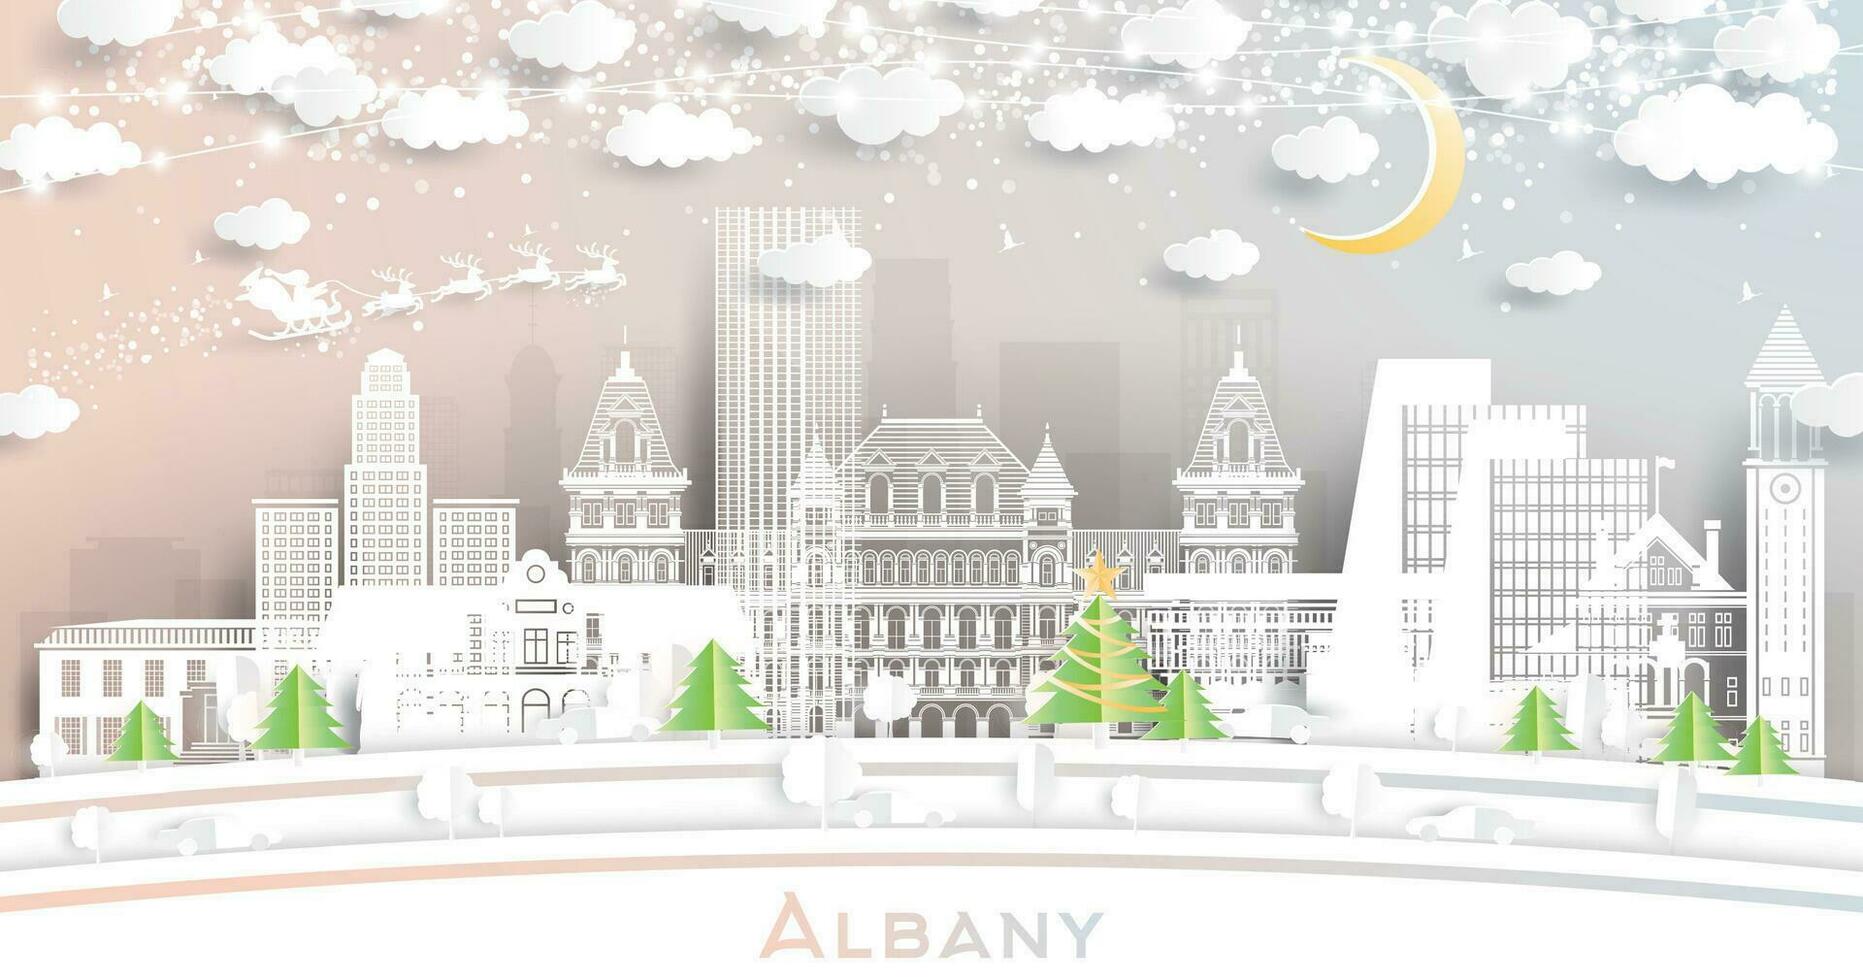 albany ny york. vinter- stad horisont i papper skära stil med snöflingor, måne och neon krans. jul och ny år begrepp. albany stadsbild med landmärken. vektor